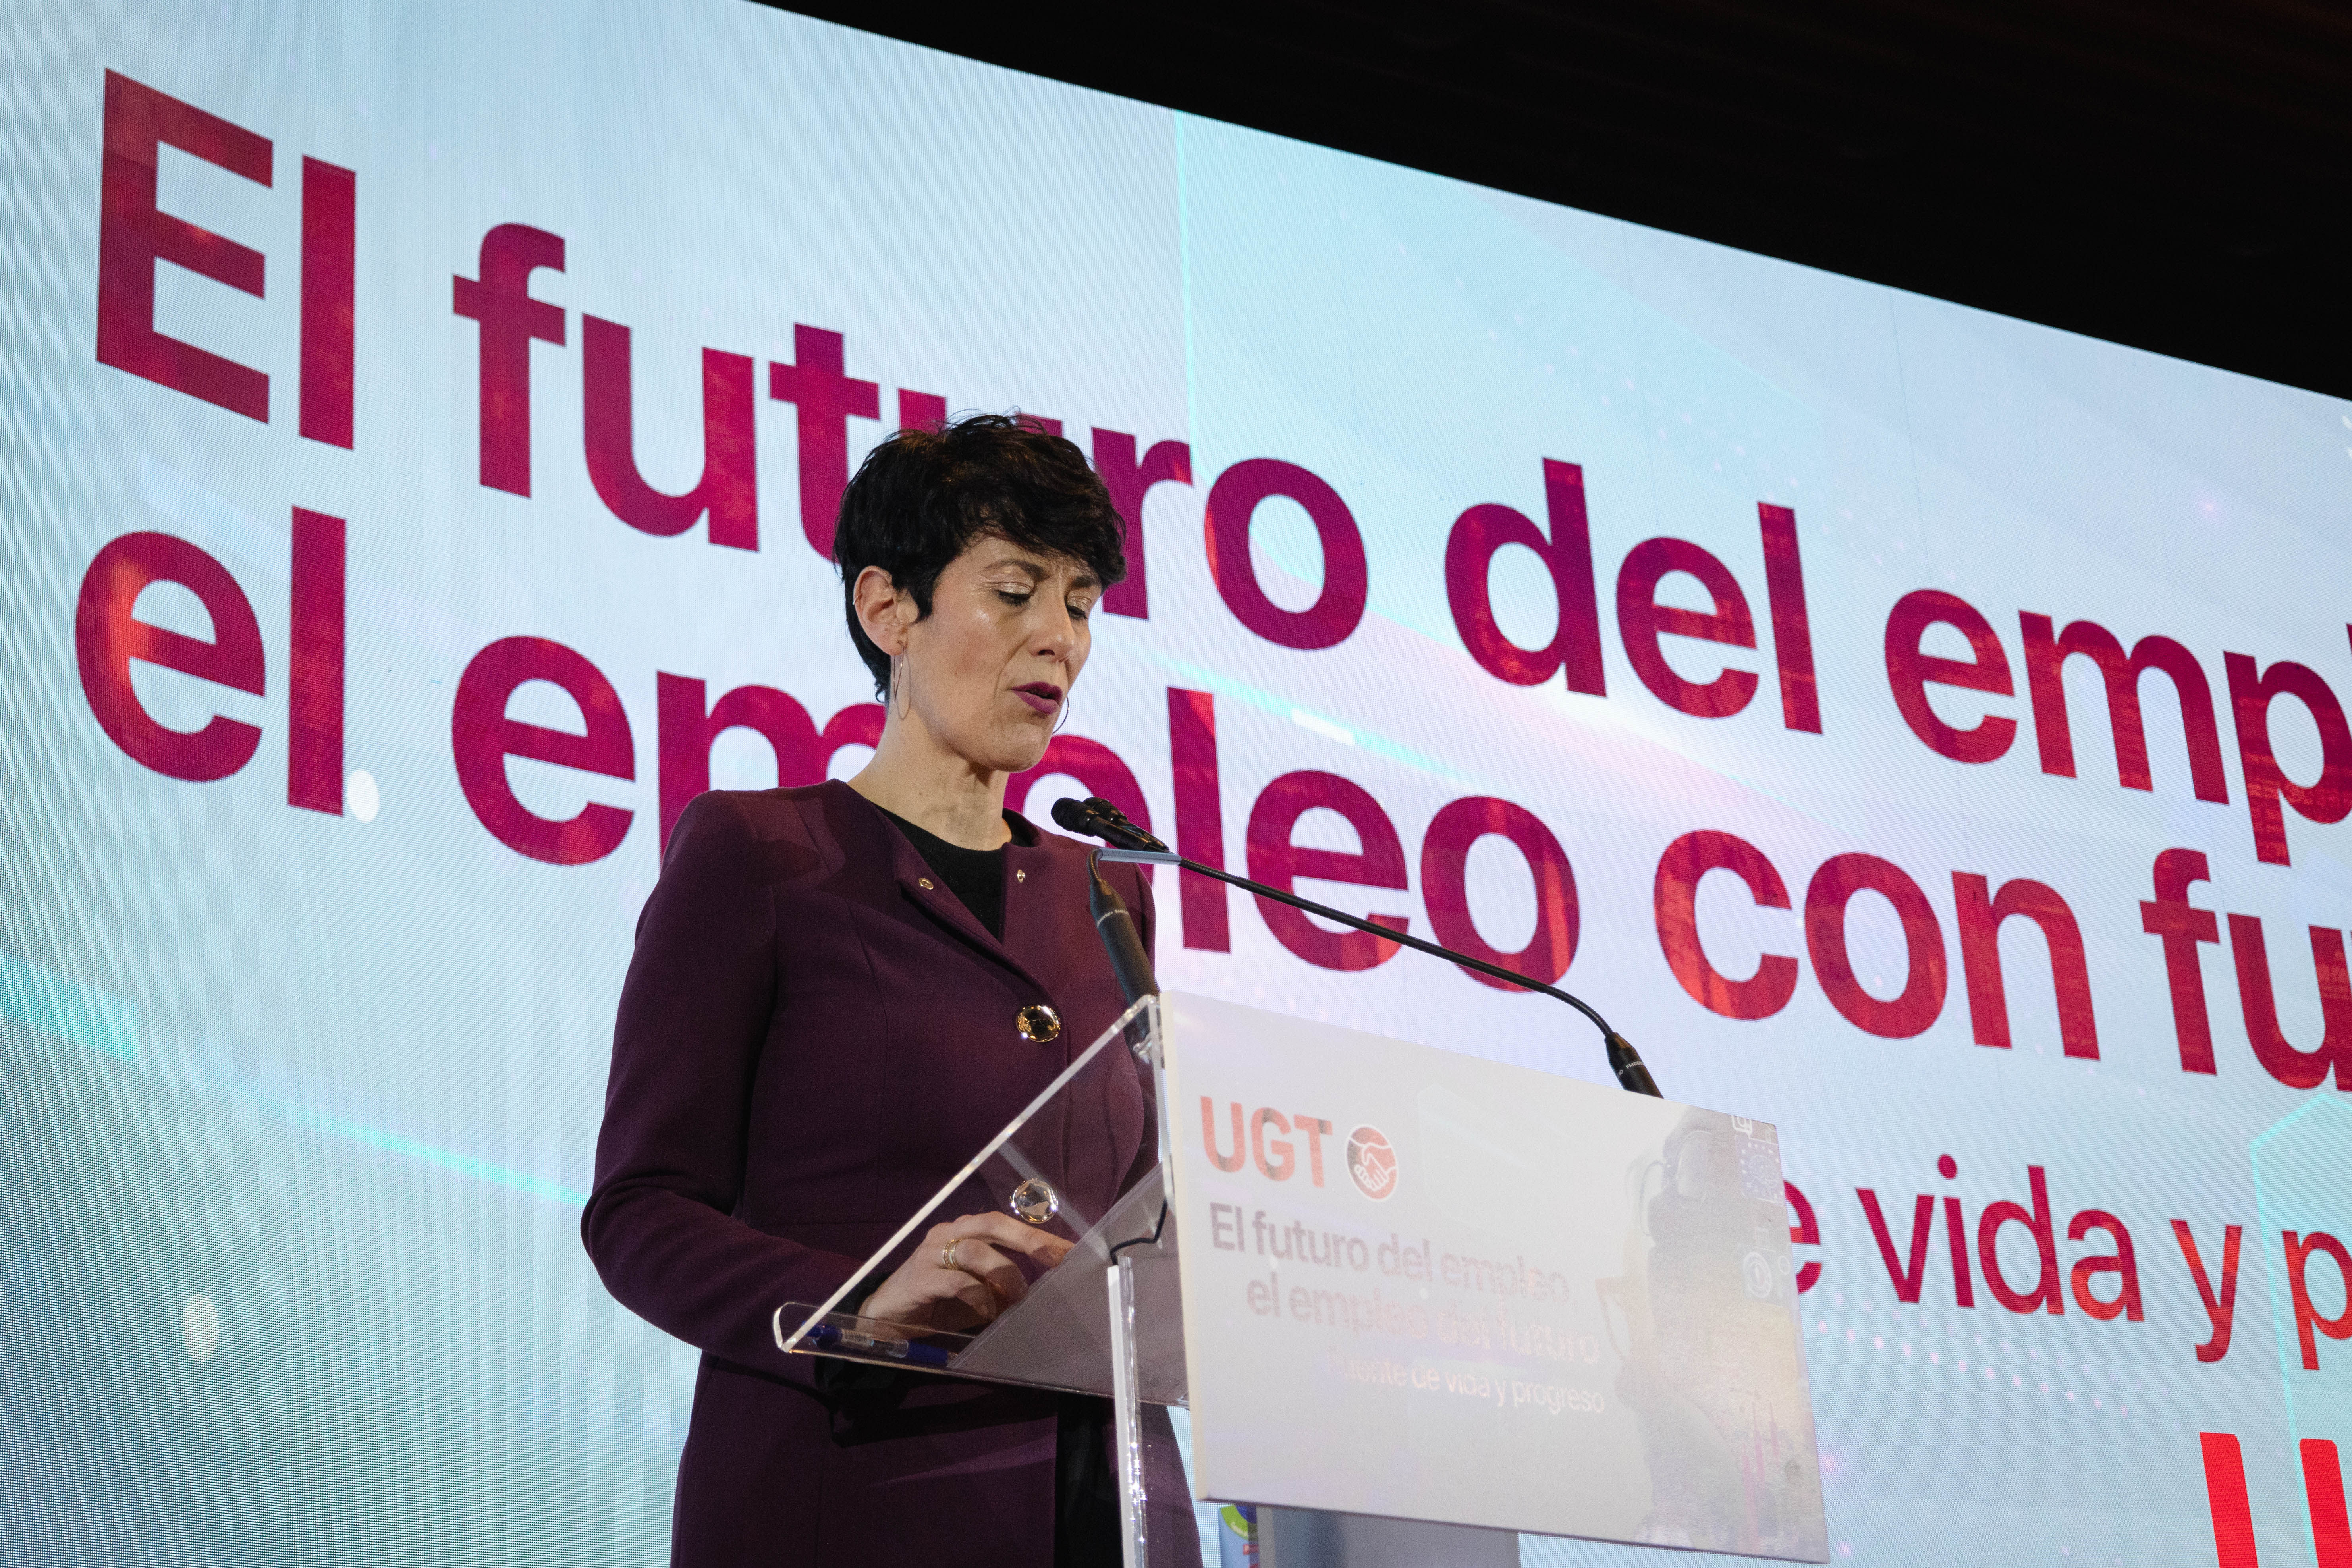 Elma Saiz Delgado es Ministra de Inclusión, Seguridad Social y Migraciones